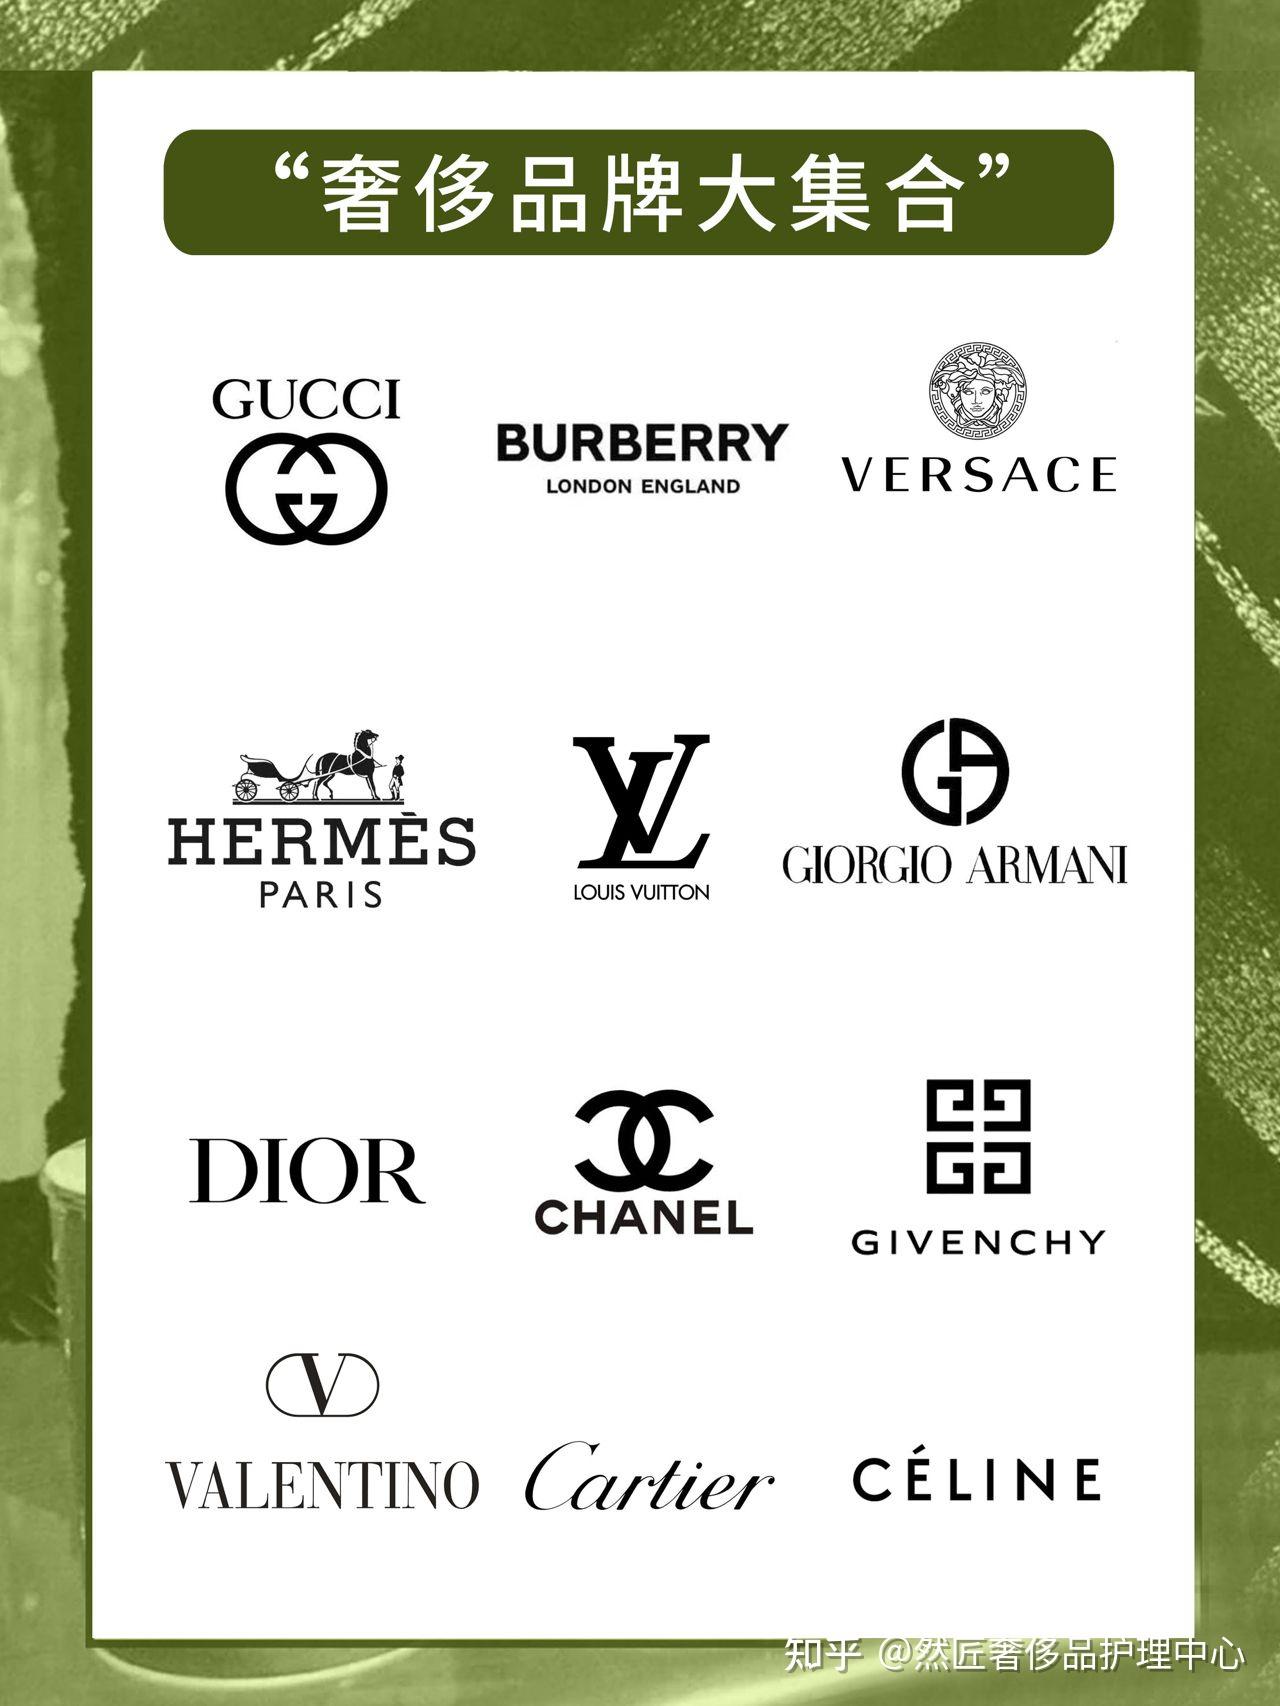 国际奢侈品品牌你知道多少?